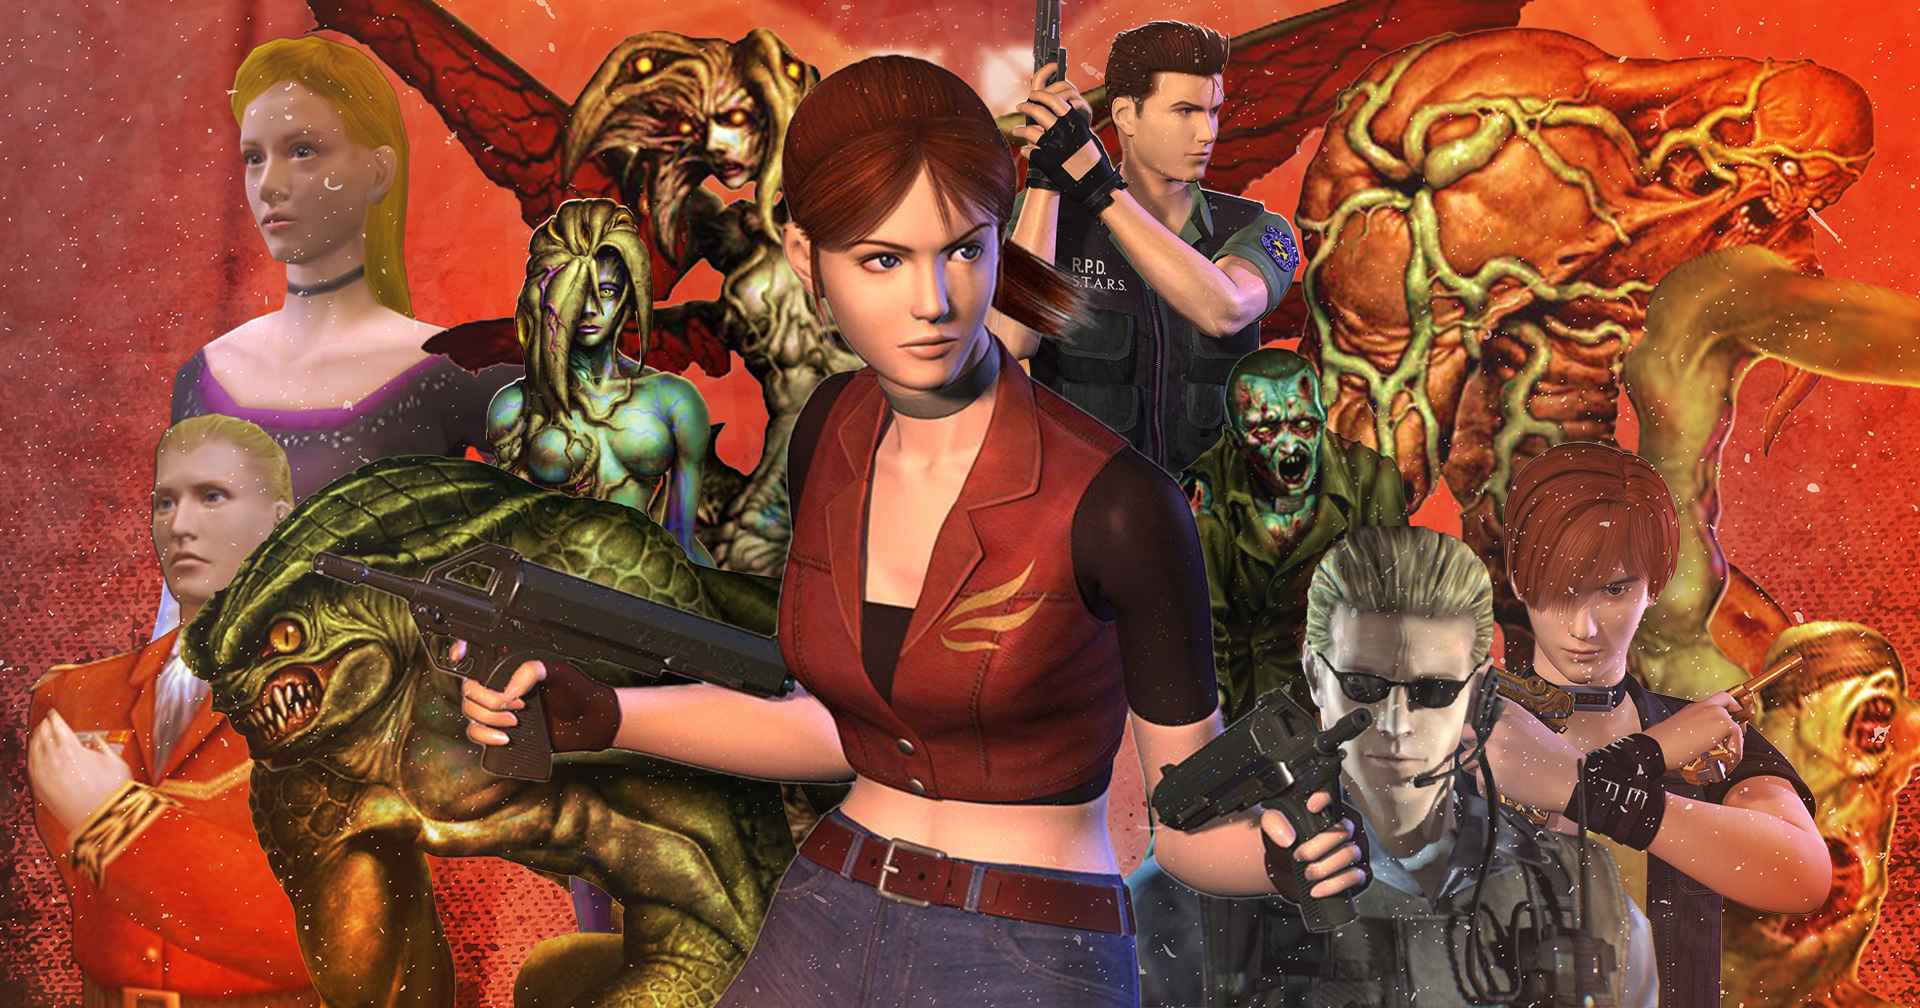 ย้อนอดีต 22 ปีความหลอน Resident Evil Code Veronica ตำนานที่คนเล่นเกมยังจดจำ